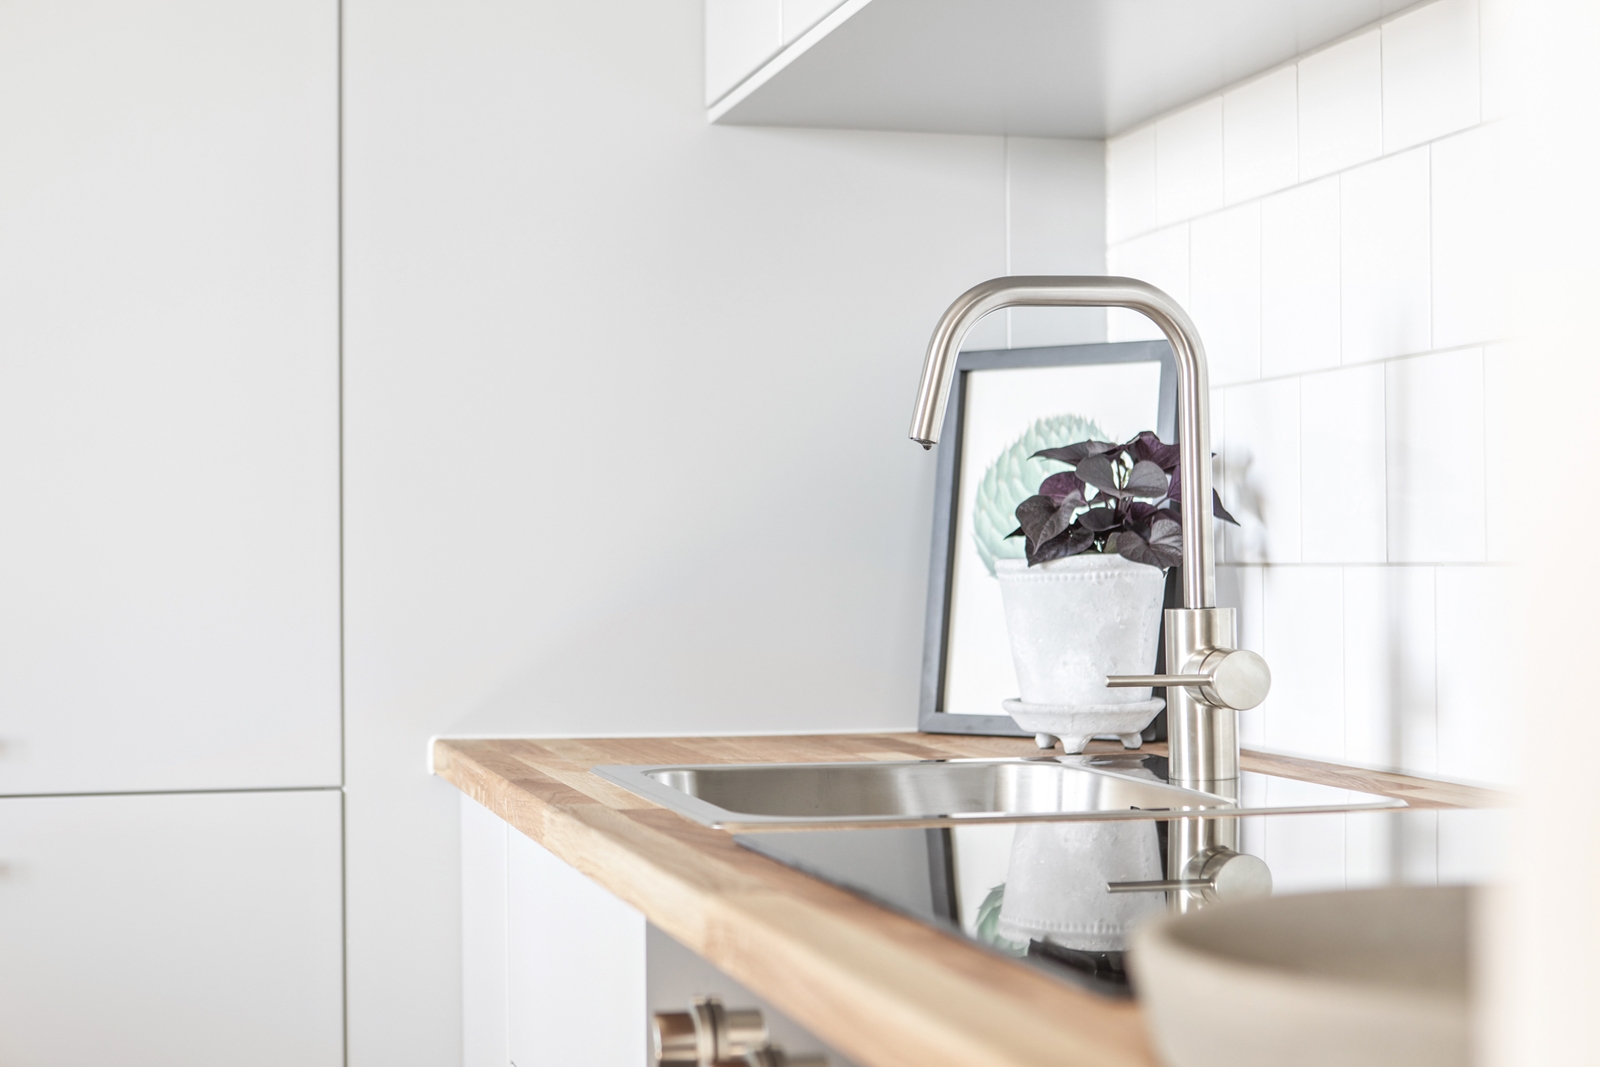 Ett ljust kök med ren design, en diskbänk i rostfritt stål och en krukväxt speglad i kranens vatten.